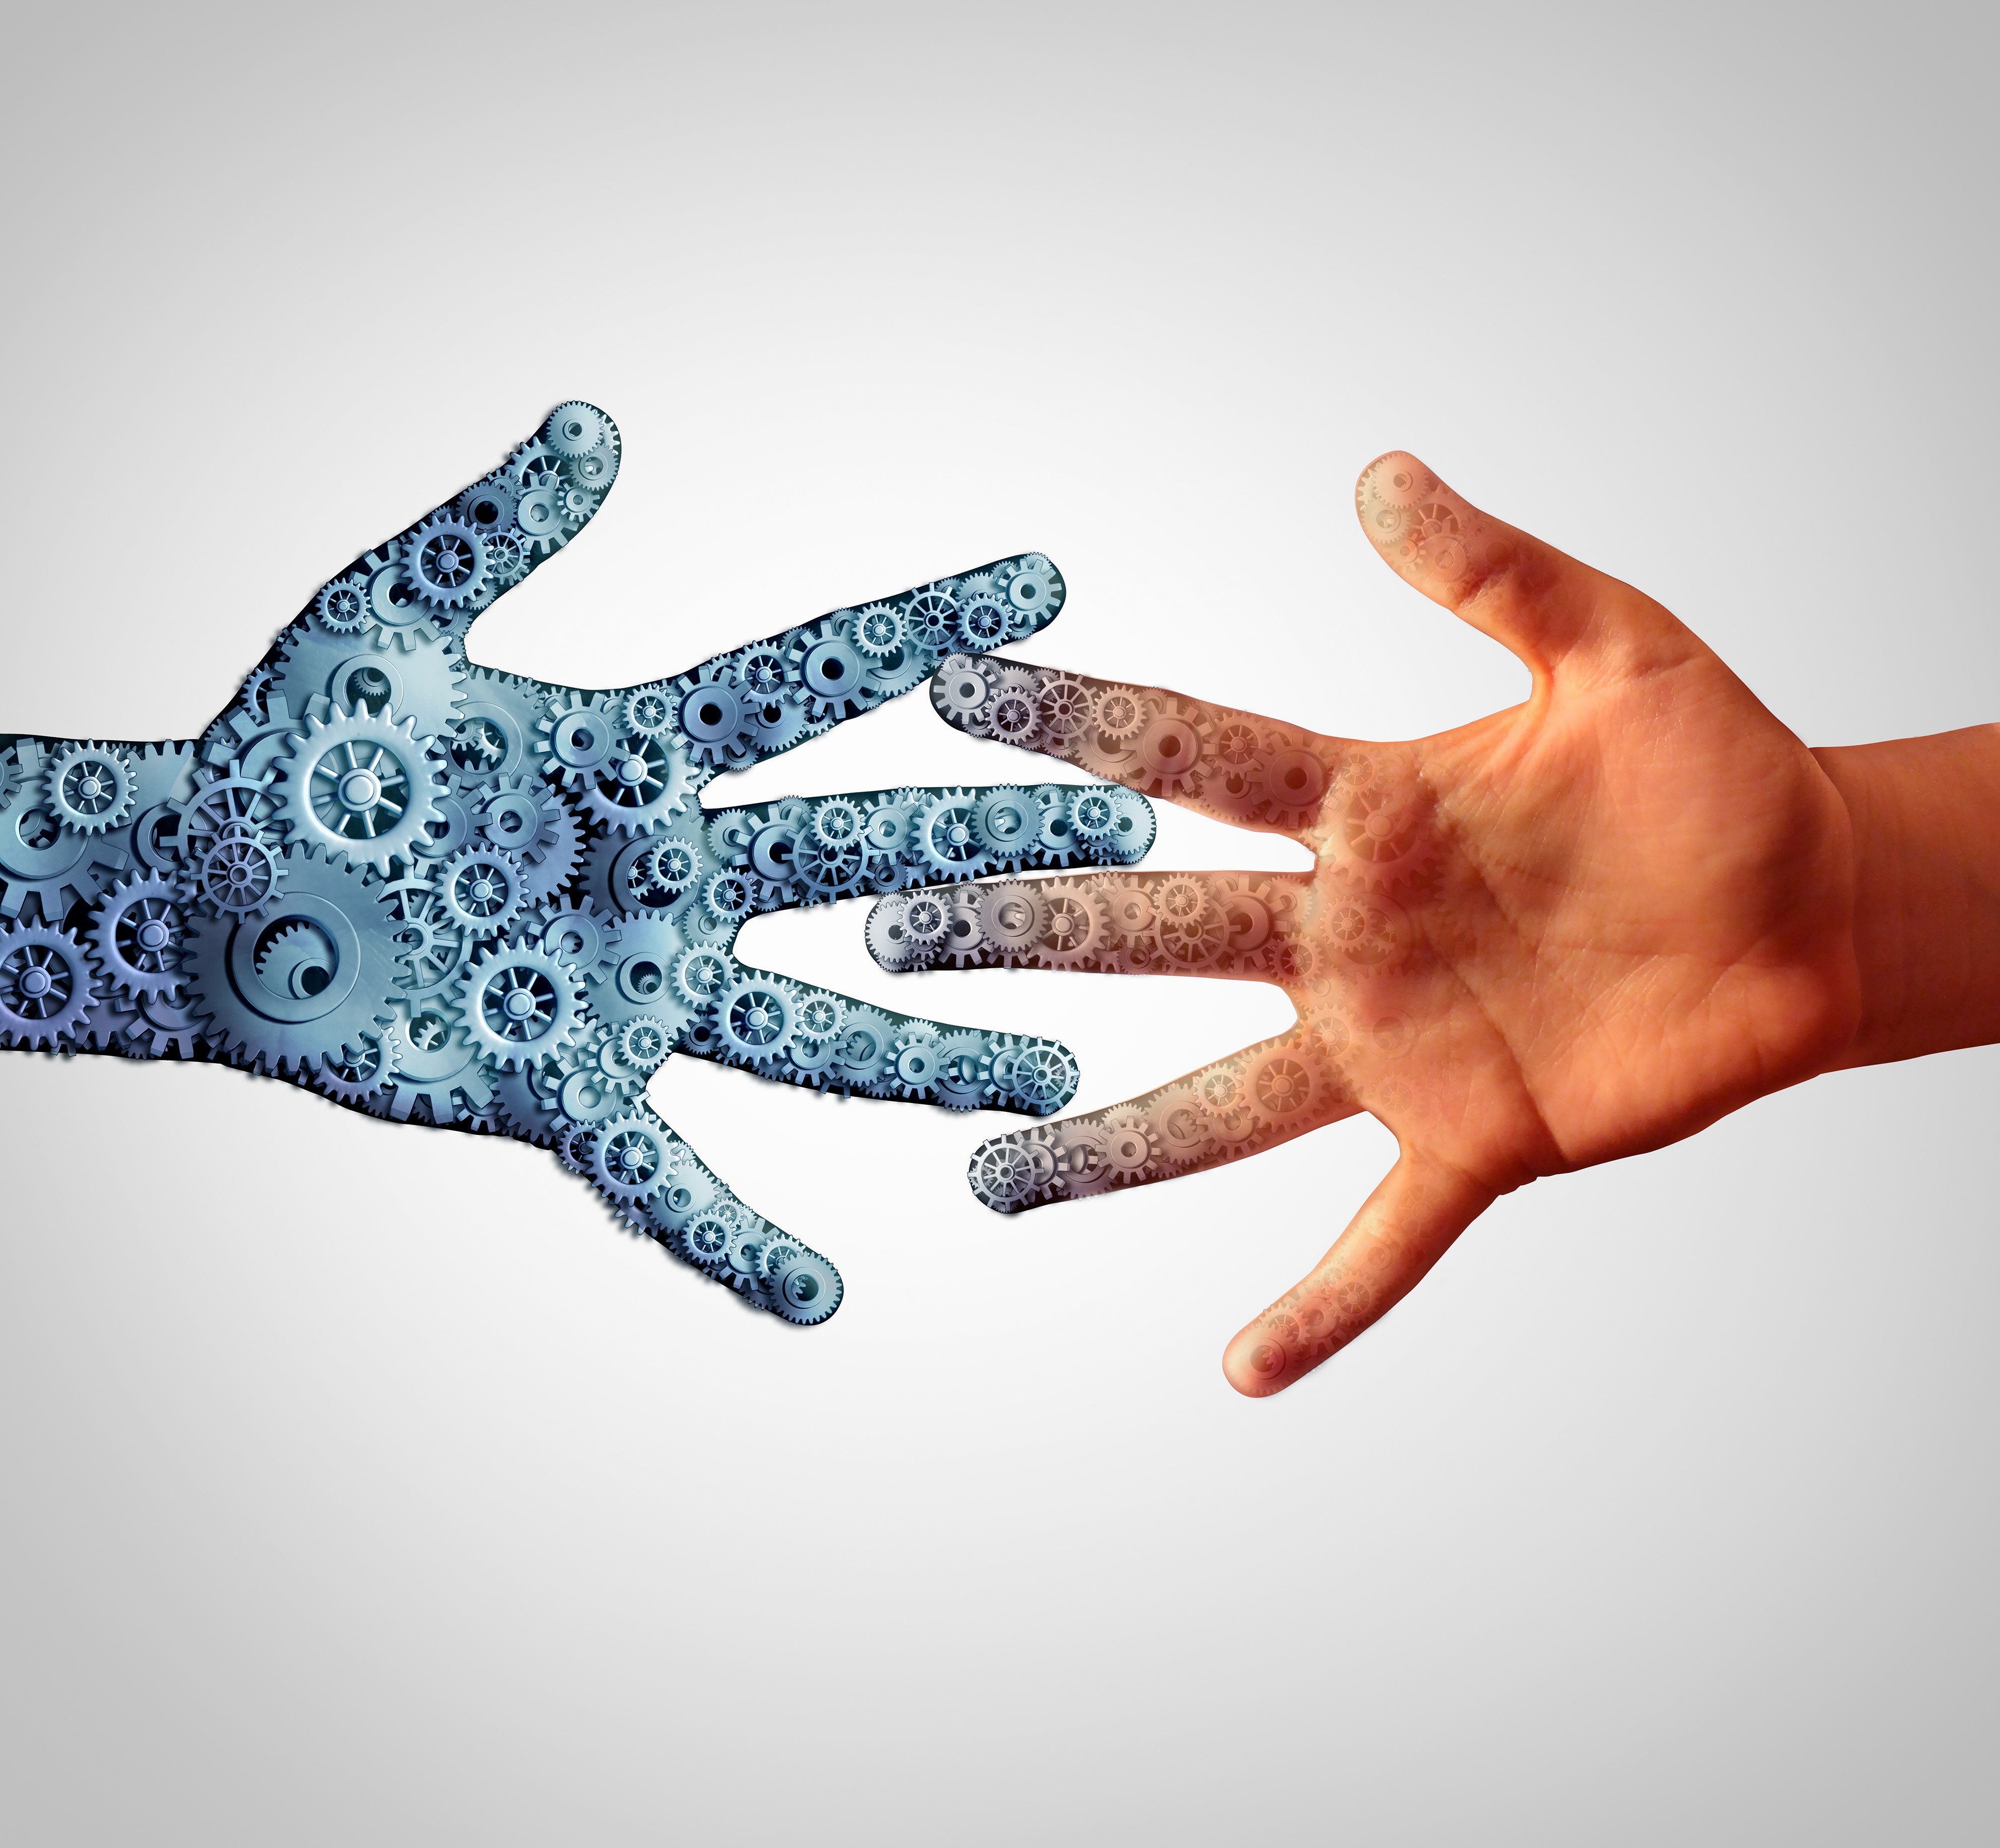 Conferencia: ¿Tendremos máquinas con una inteligencia similar a la humana?